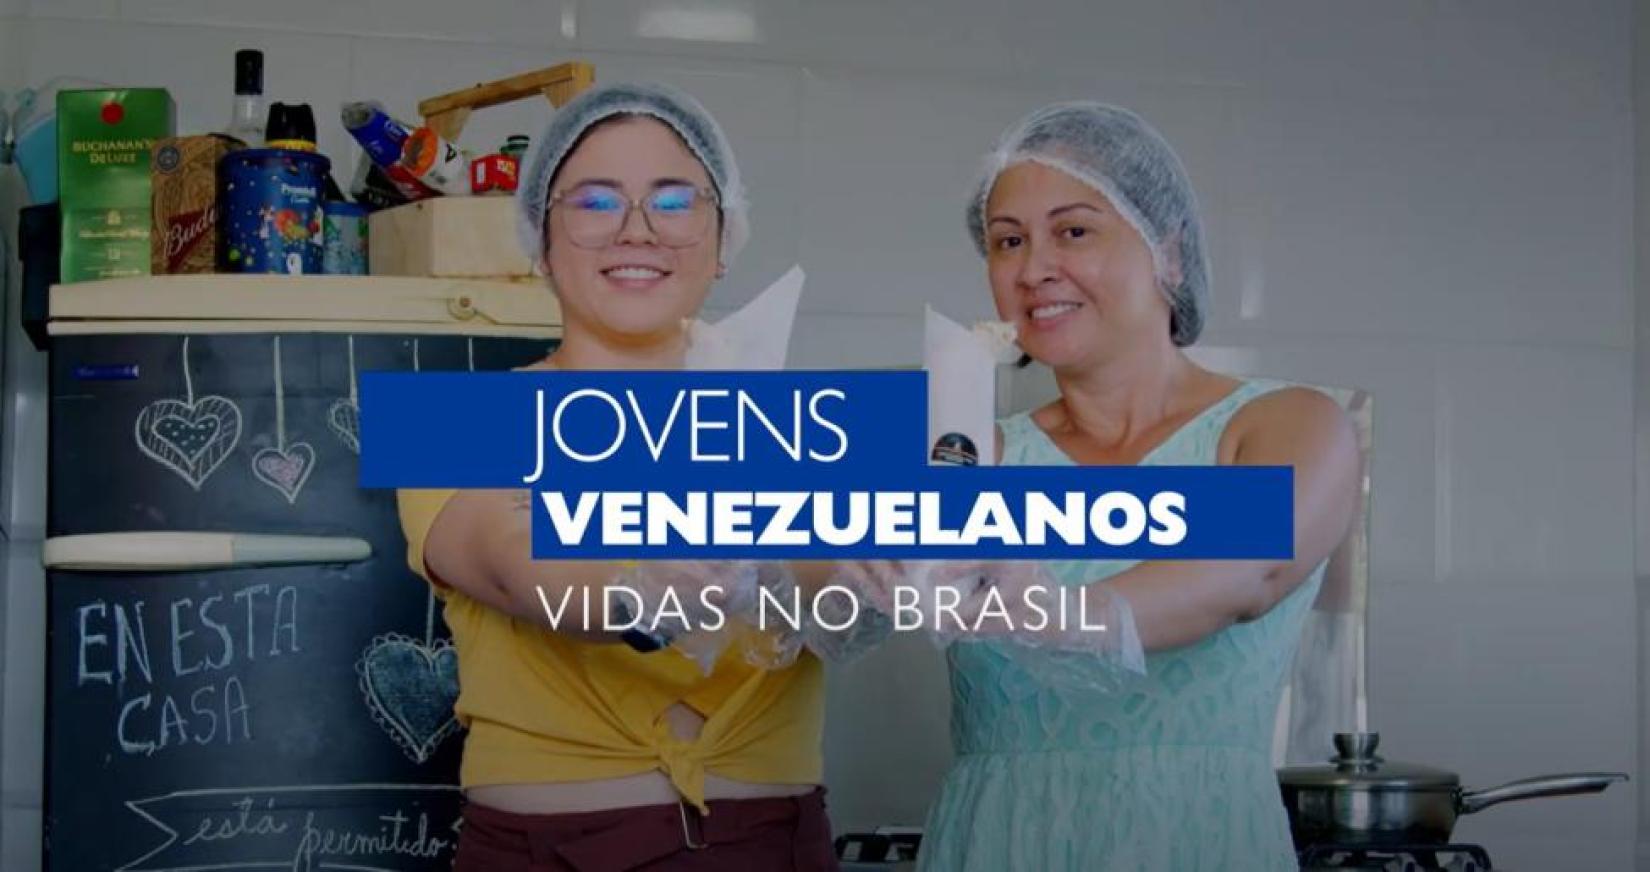 Integração de jovens venezuelanos no Brasil é tema de minissérie de vídeos lançada pela OIM.